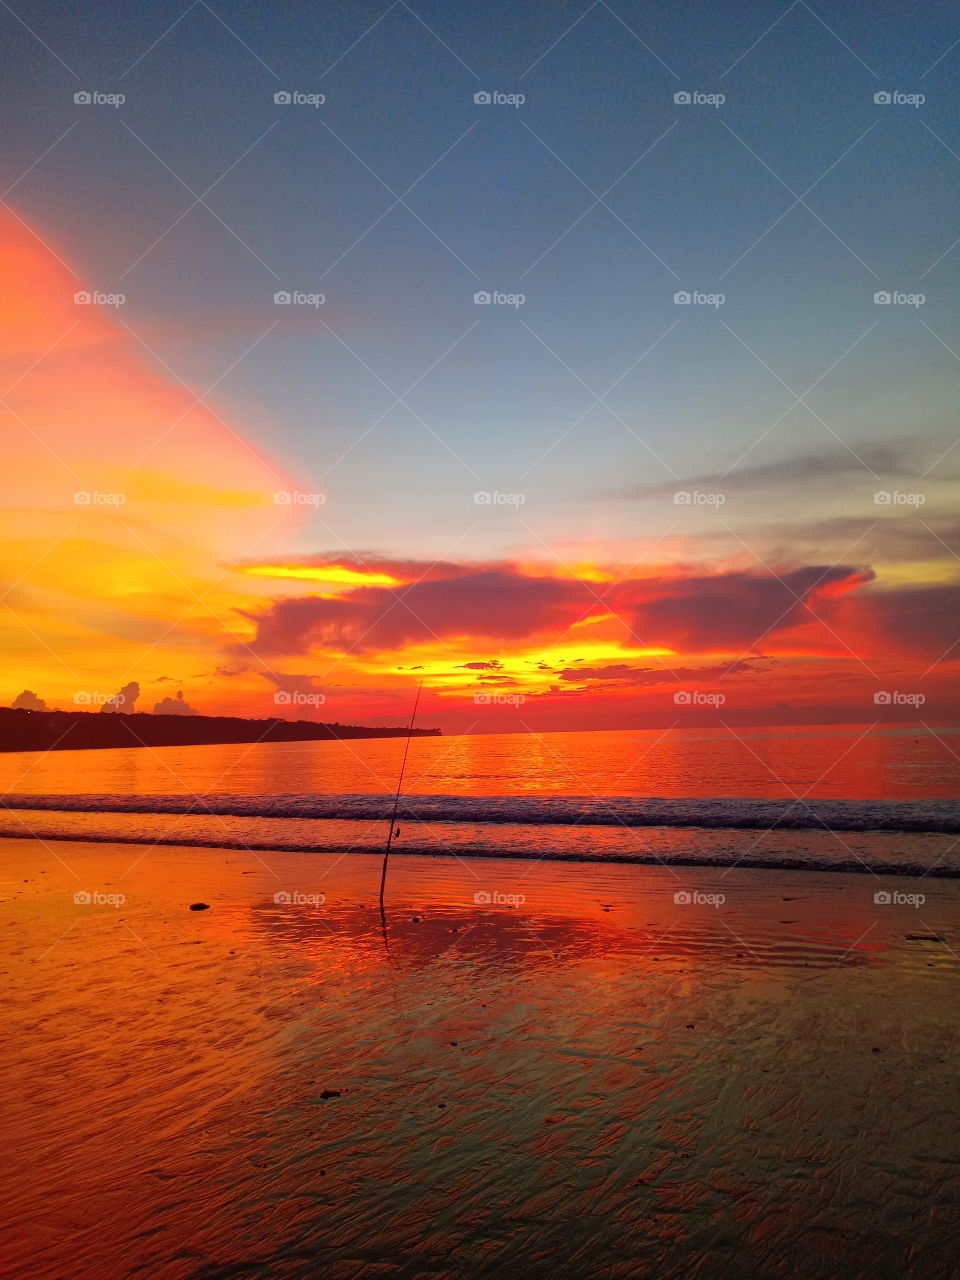 Sunset / Ocean